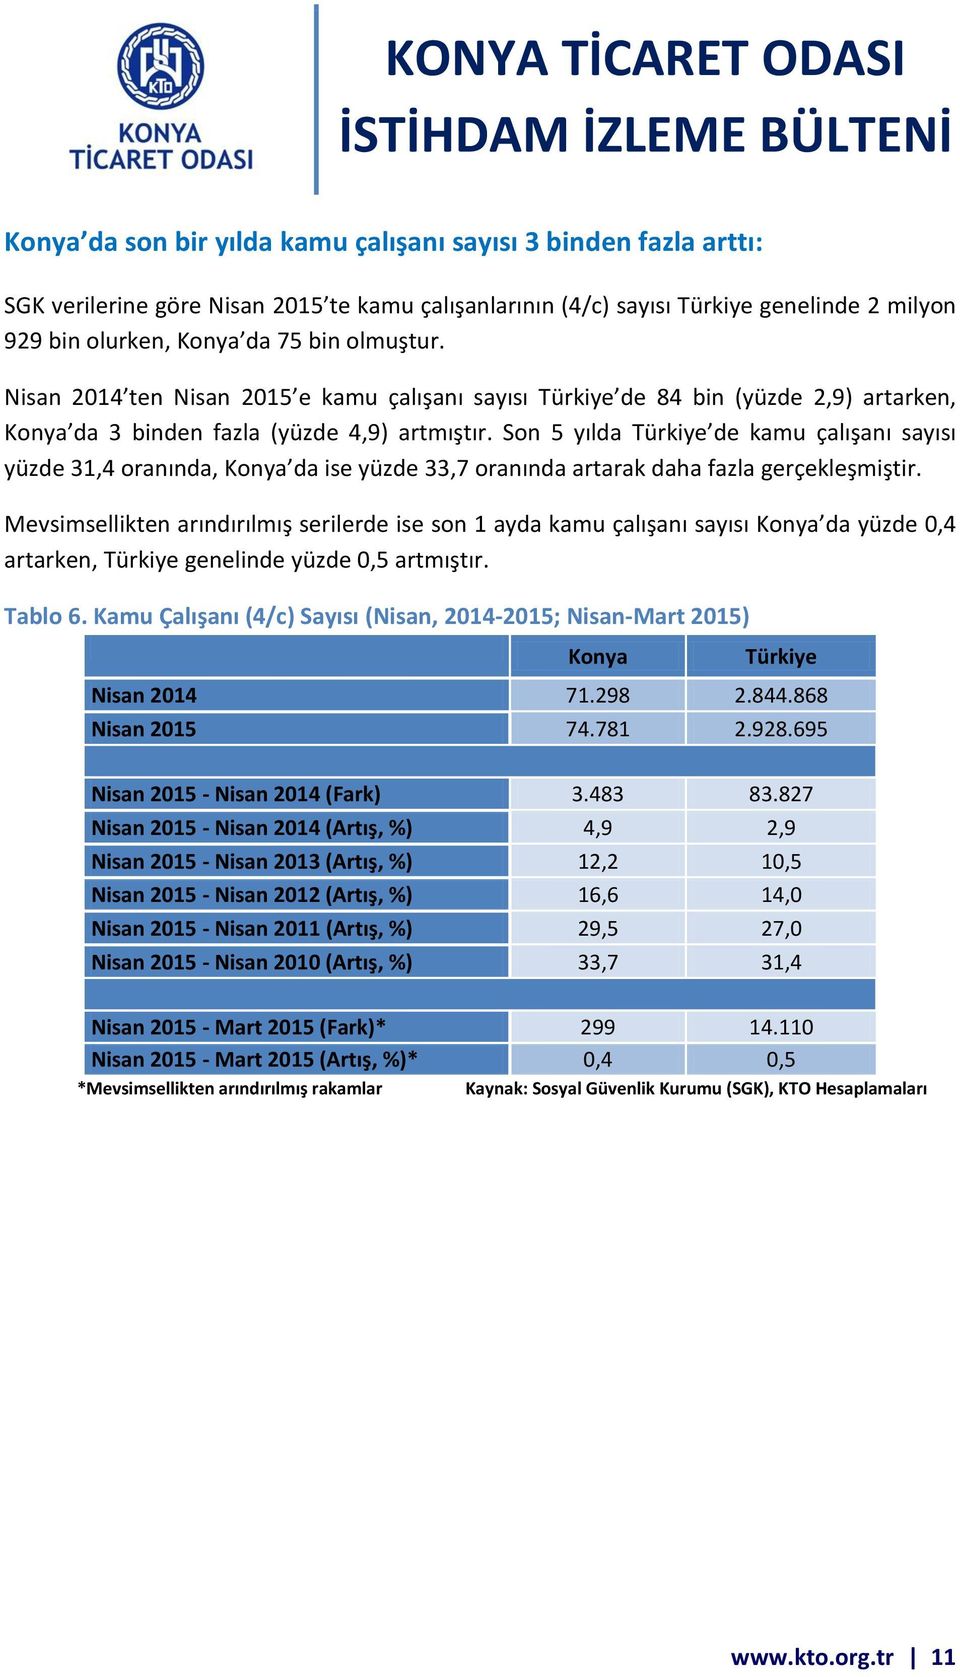 Son 5 yılda Türkiye de kamu çalışanı sayısı yüzde 31,4 oranında, Konya da ise yüzde 33,7 oranında artarak daha fazla gerçekleşmiştir.